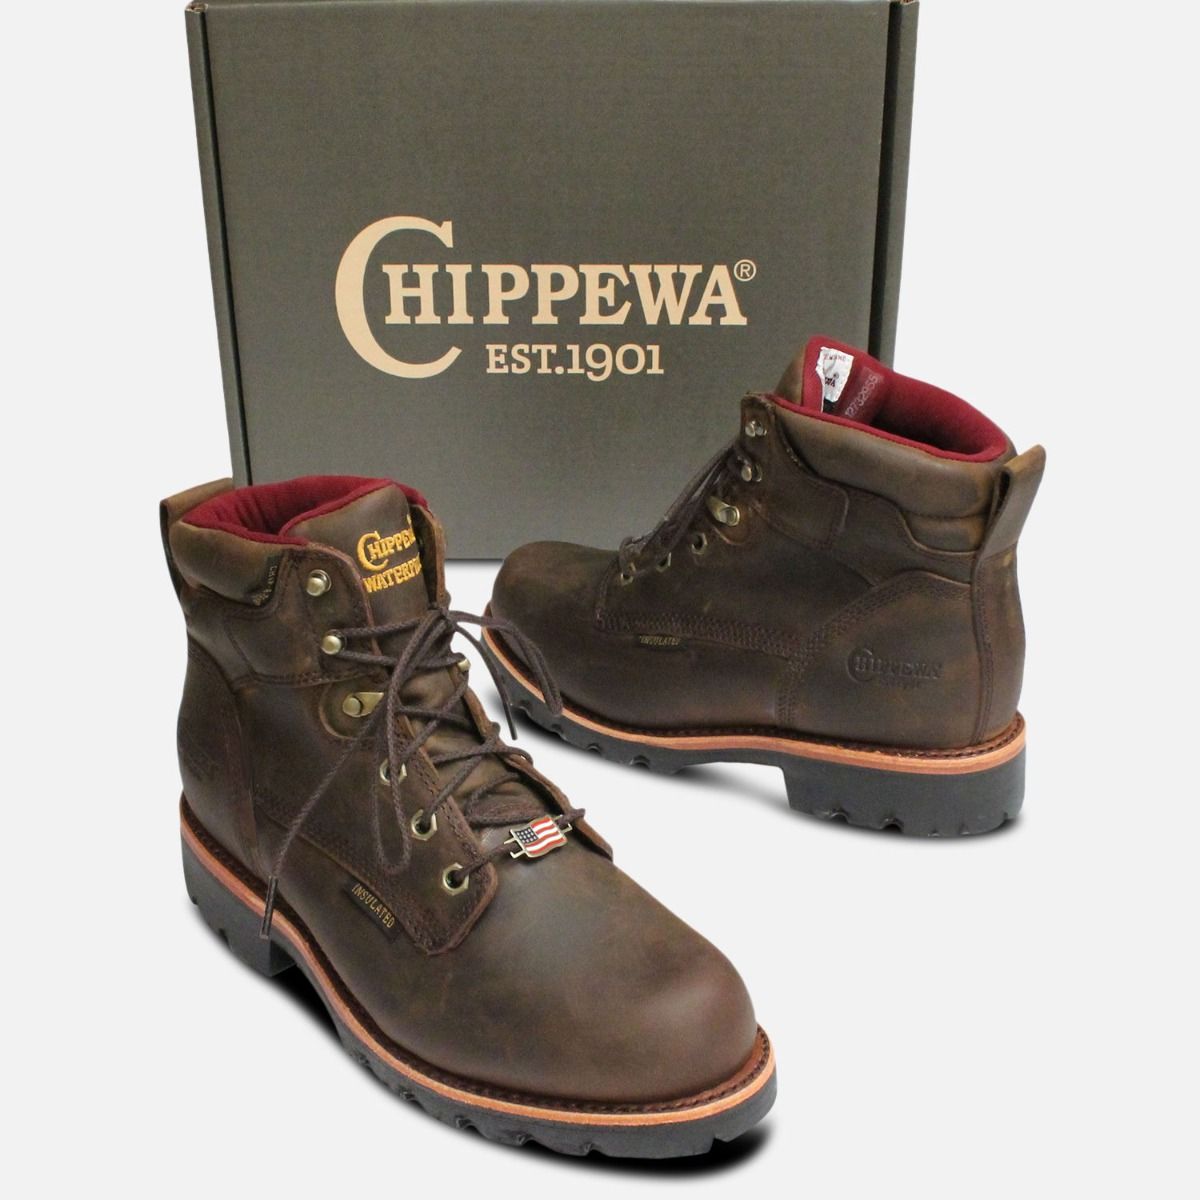 chippewa insulated waterproof boots